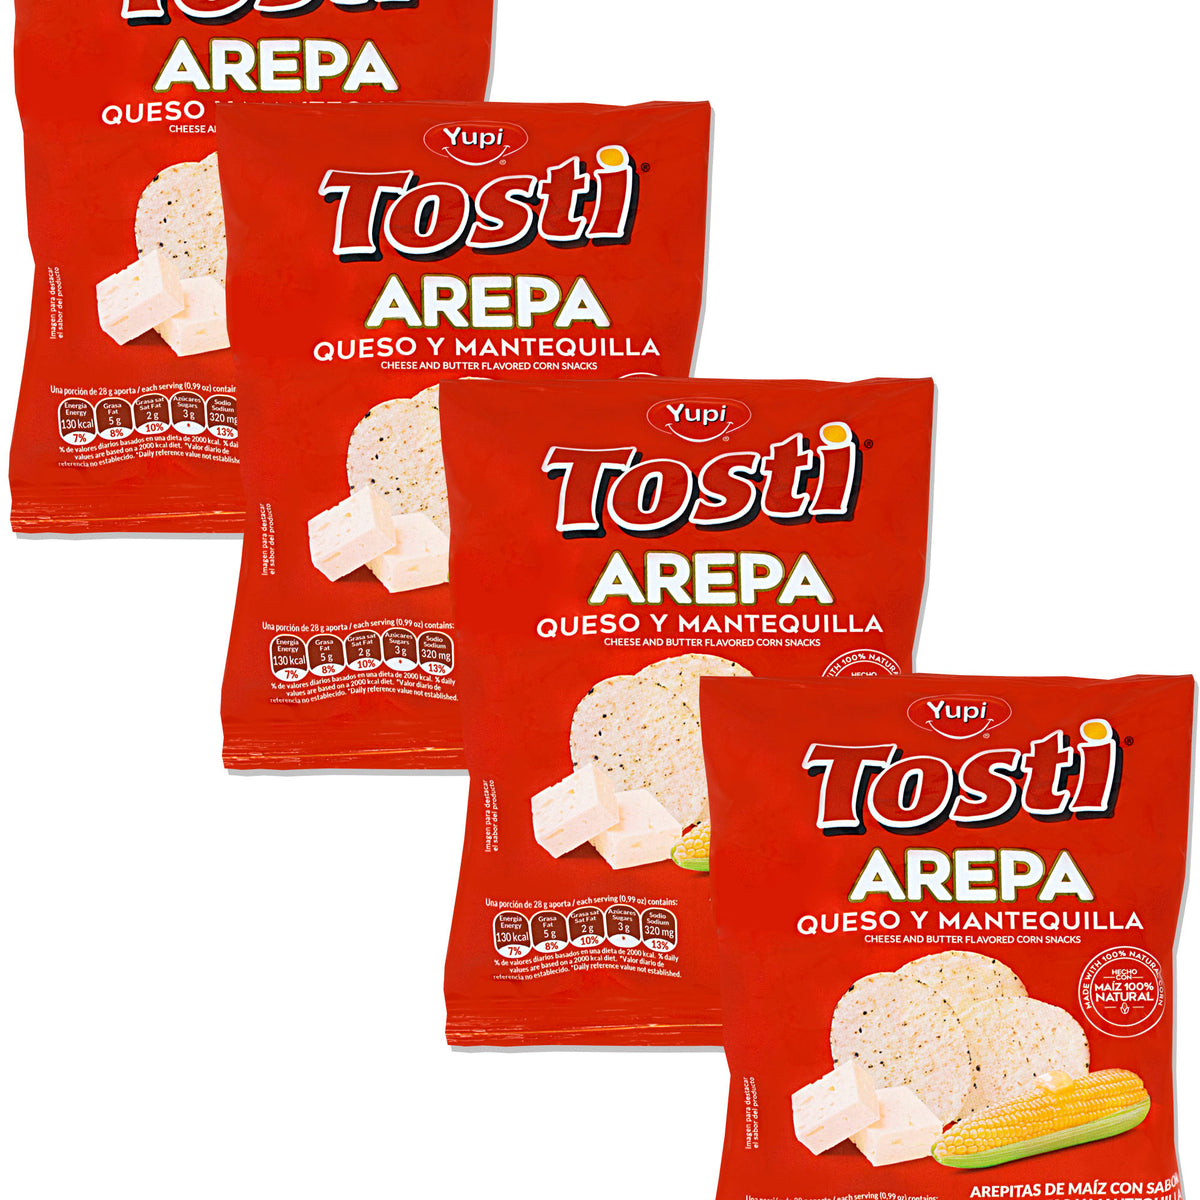 Tosti Arepas - 🫓 🇻🇪En el TostiArepas puedes cocinar todo lo que puedes  imaginar. 🫓 No solo Arepas. 🙋Tienes mil opciones, con nuestro  electrodoméstico. 👋Dinos en los comentarios 👇👇👇¿Cuál es tu receta